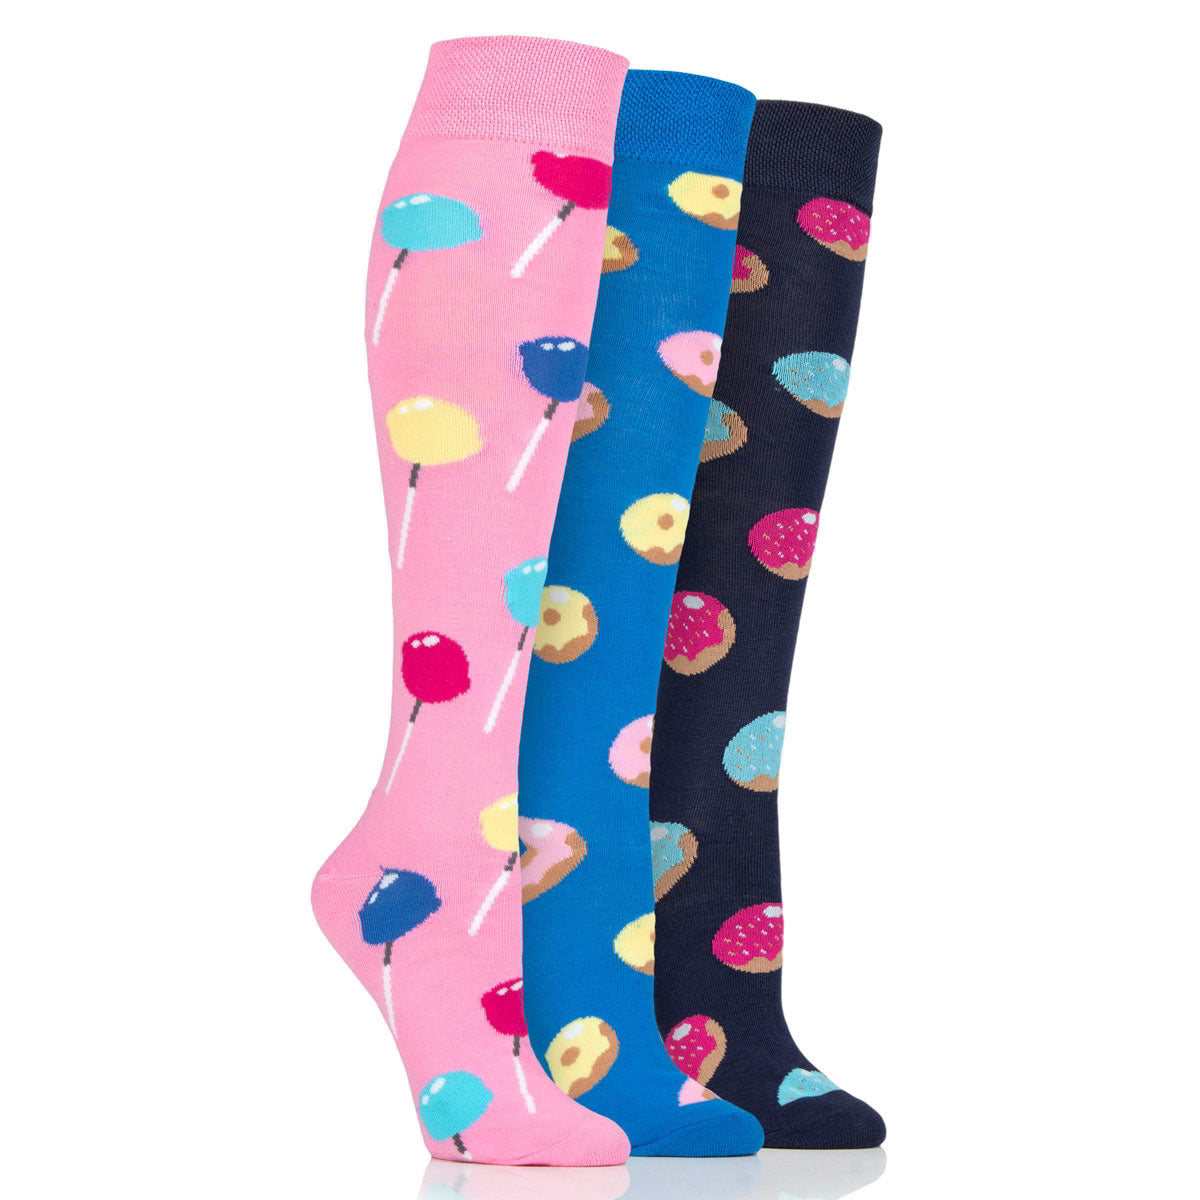 Dare To Wear Ladies Long Socks 3 Pack - Sweets